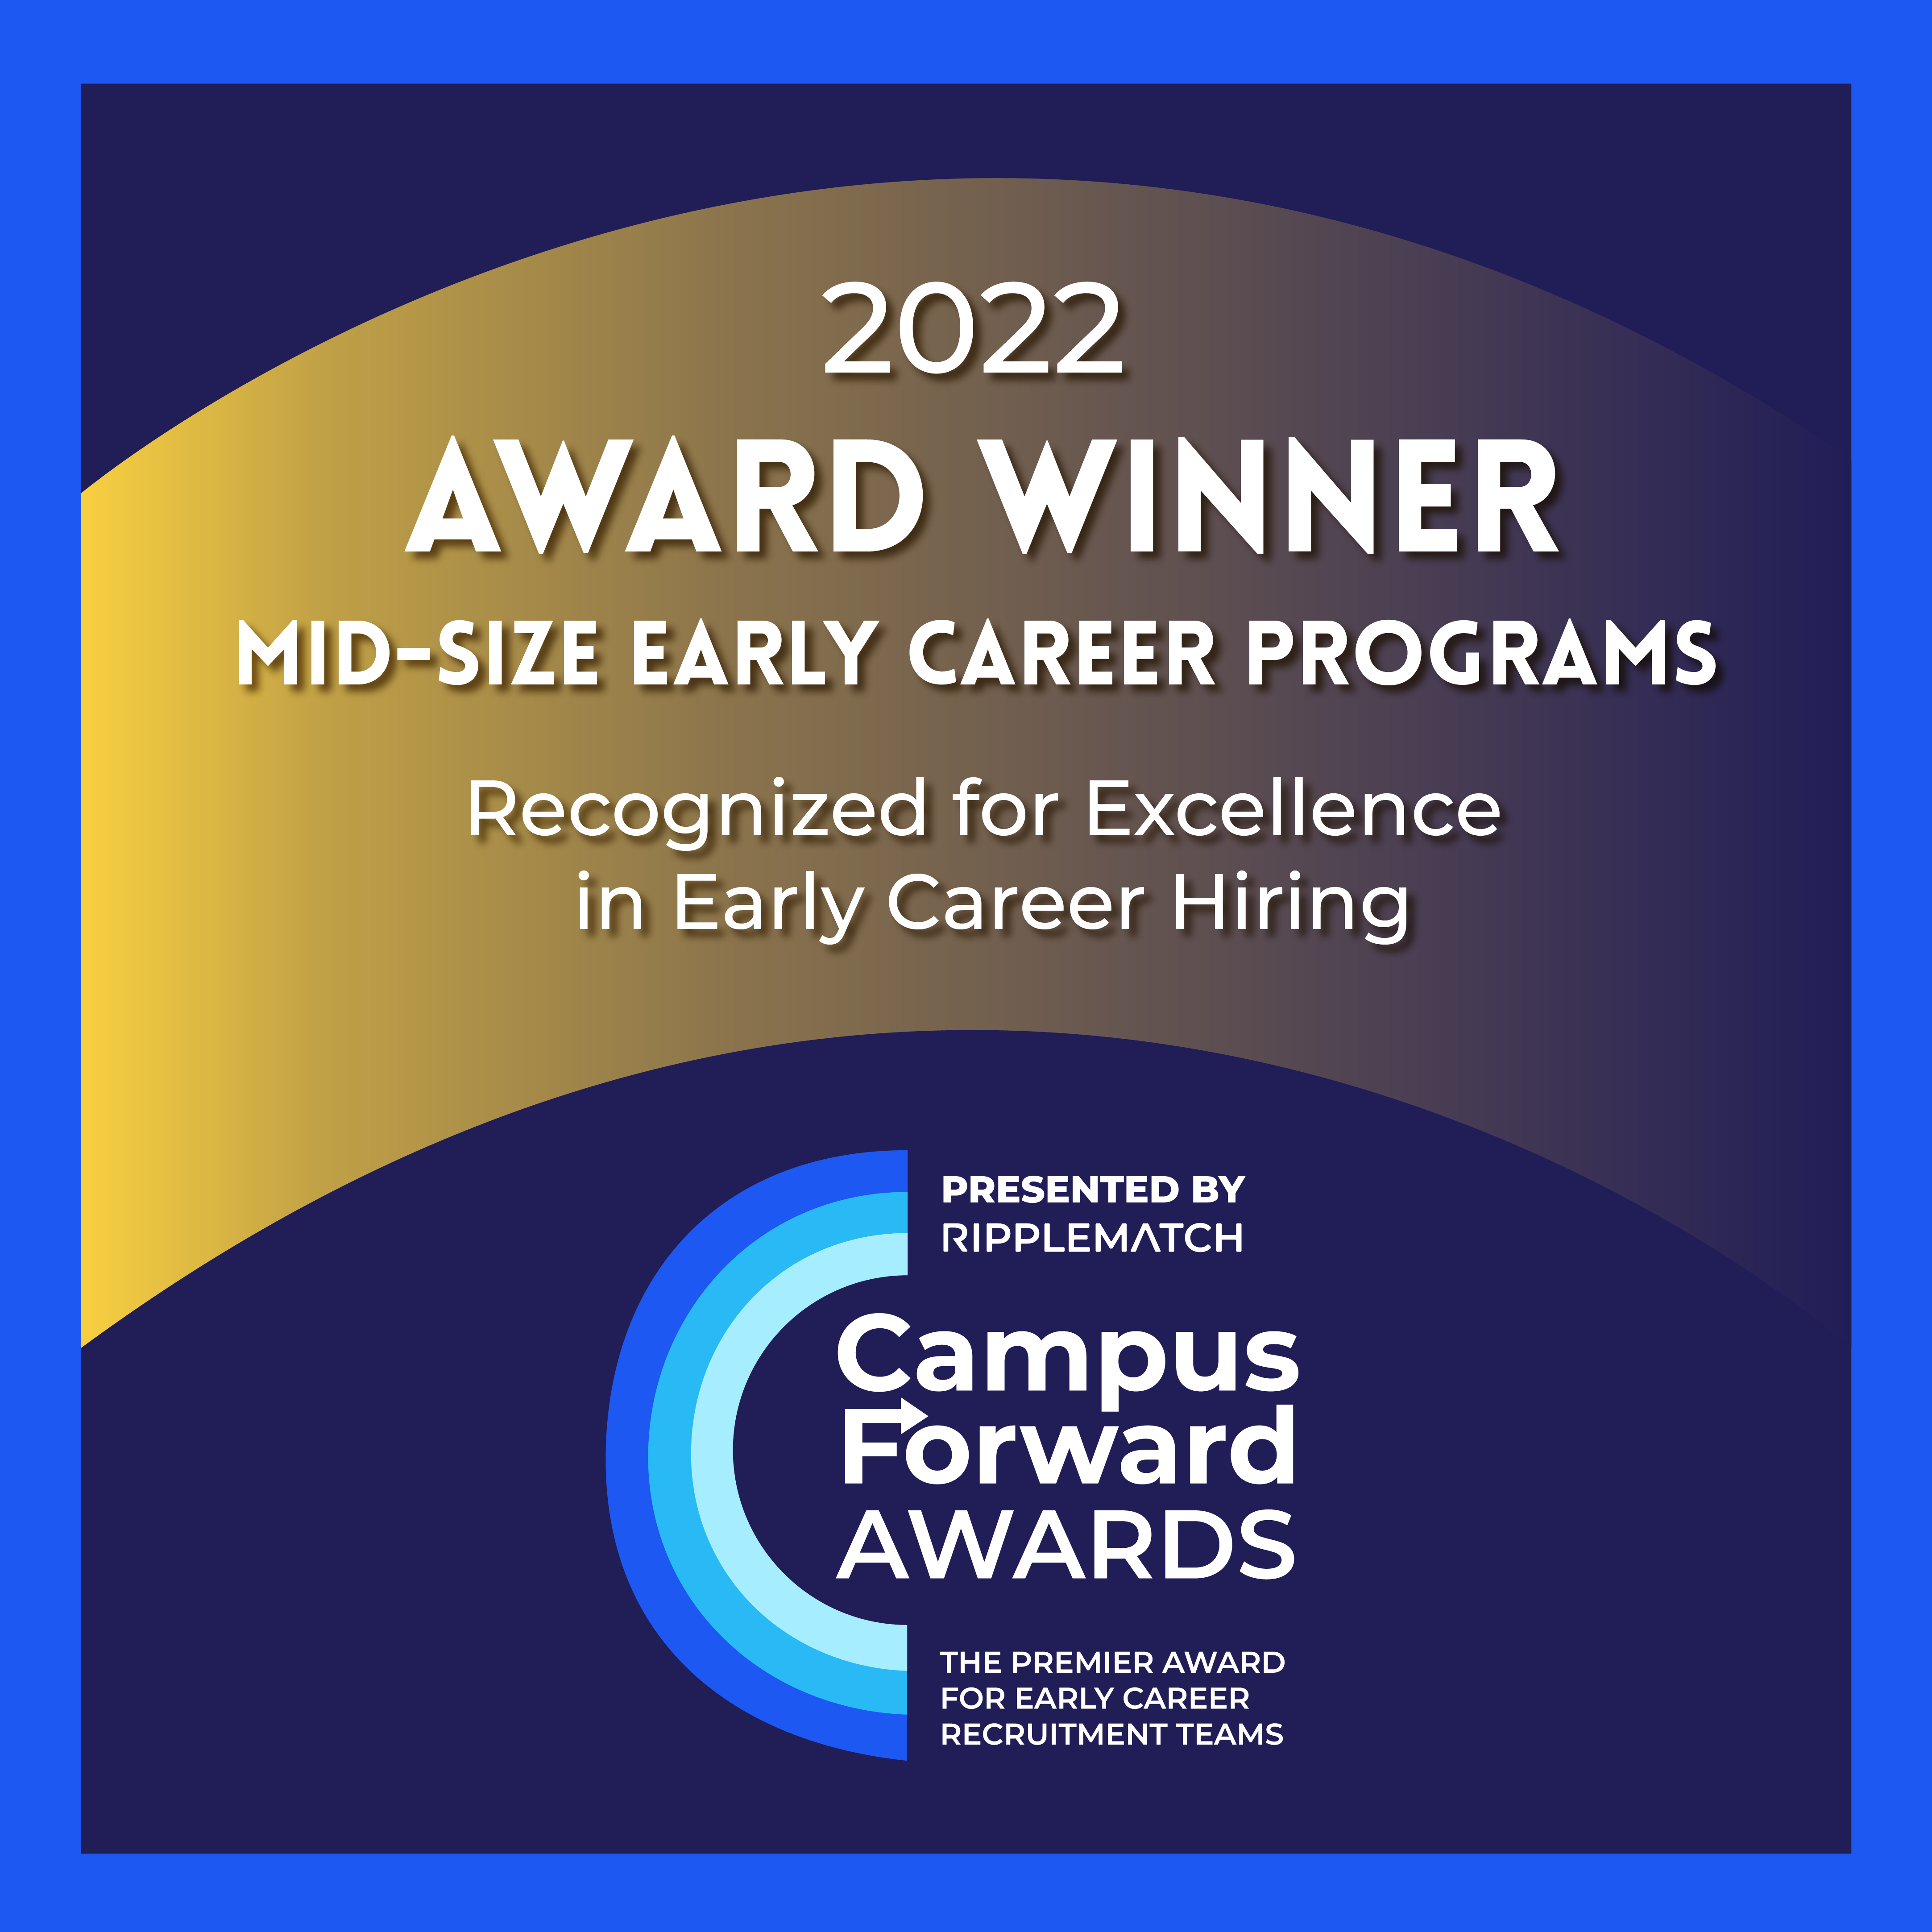 2022 Award Winner - Mid-size Career Programs